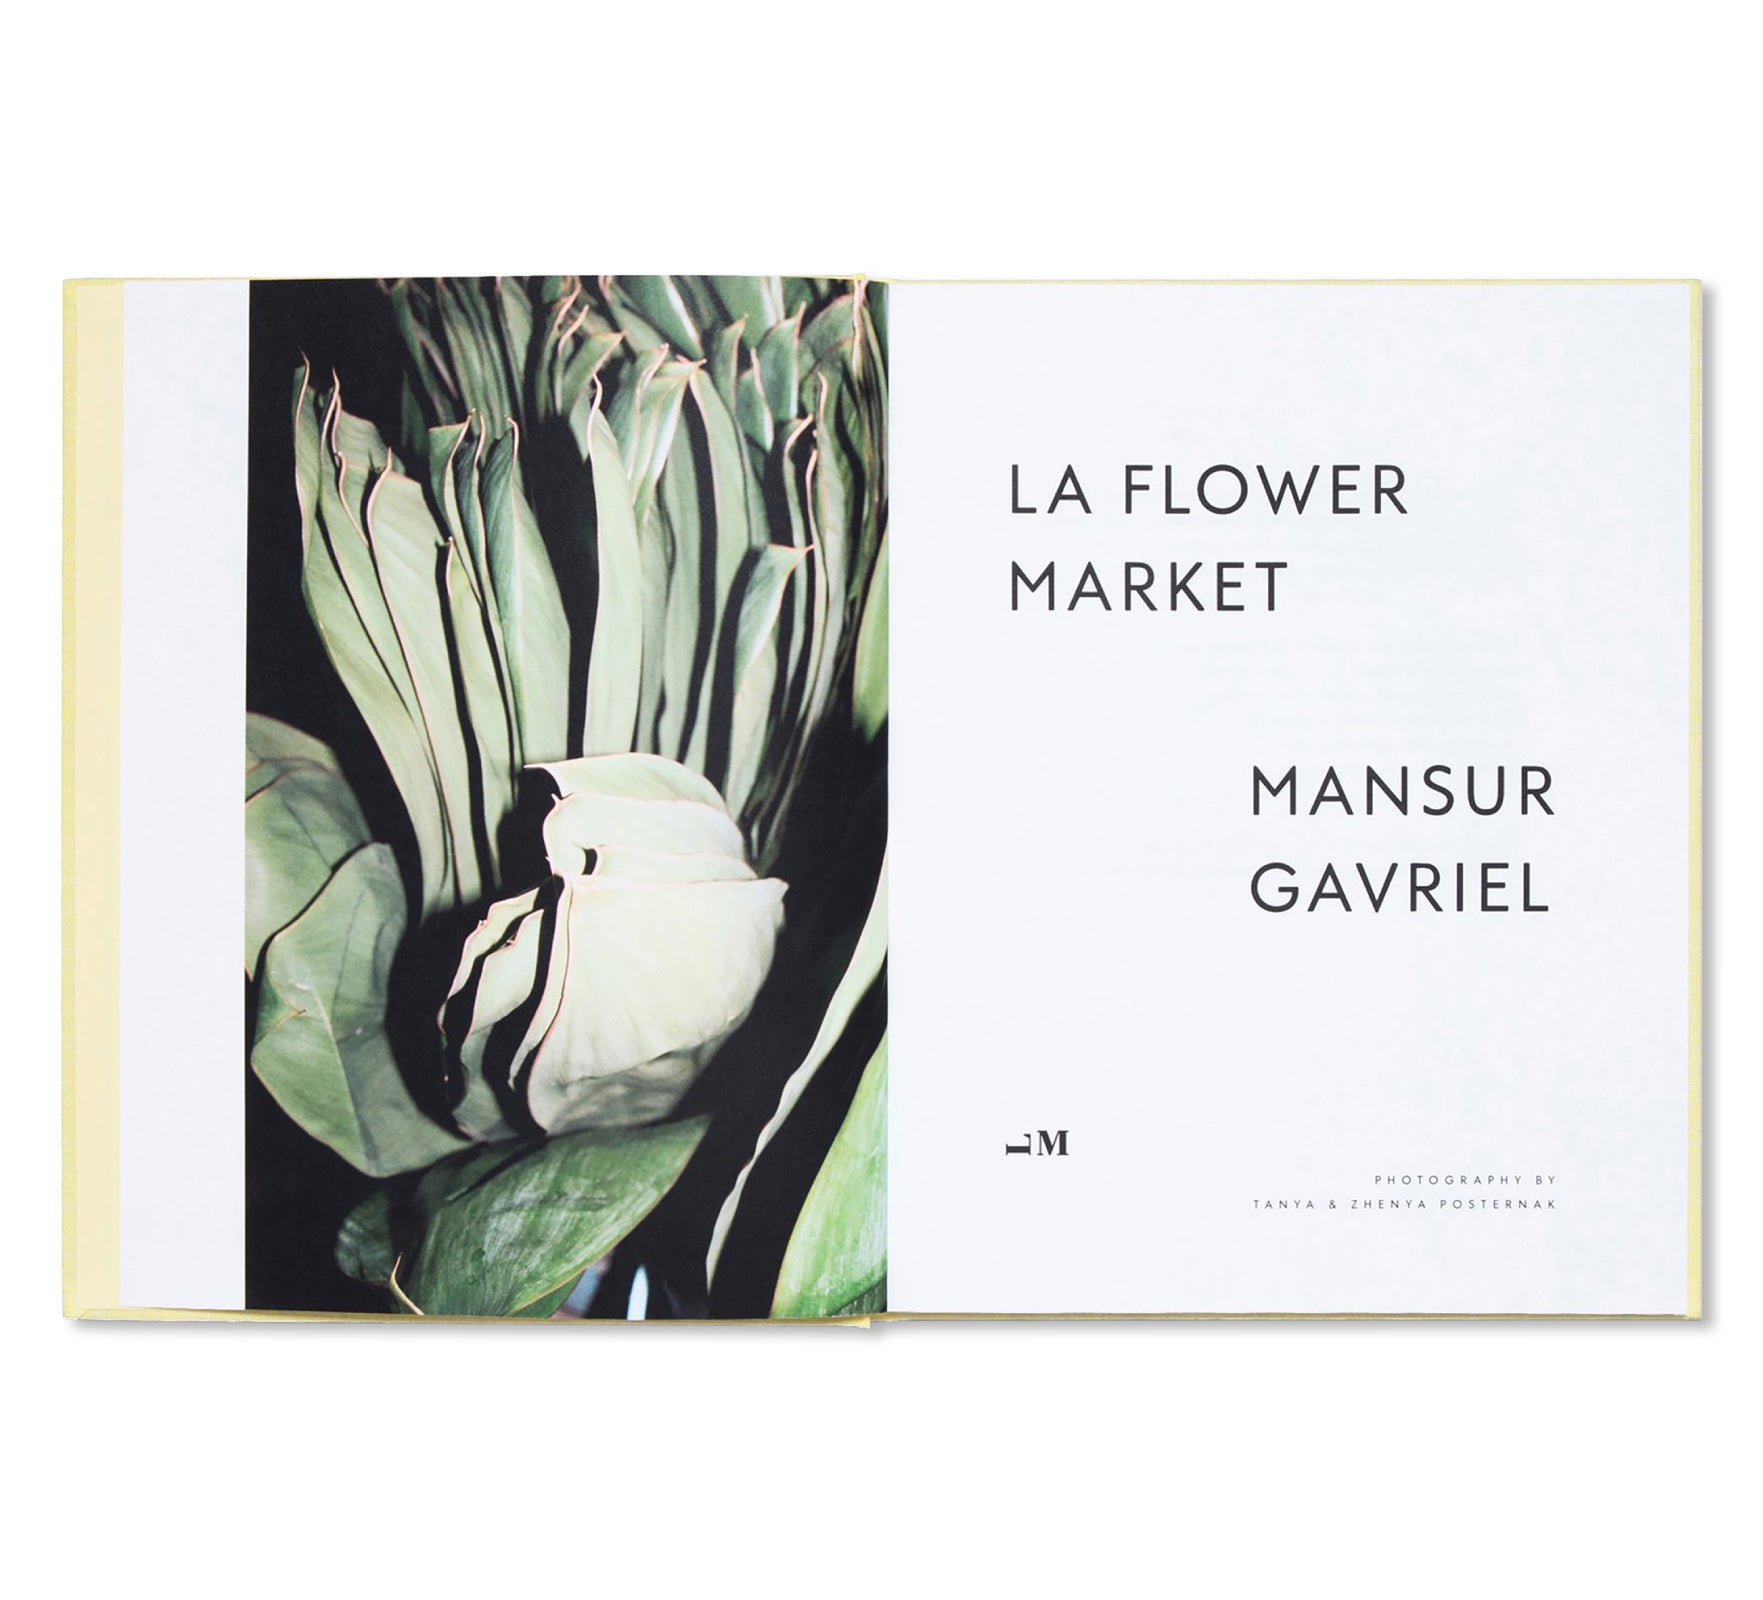 LA FLOWER MARKET by Mansur Gavriel